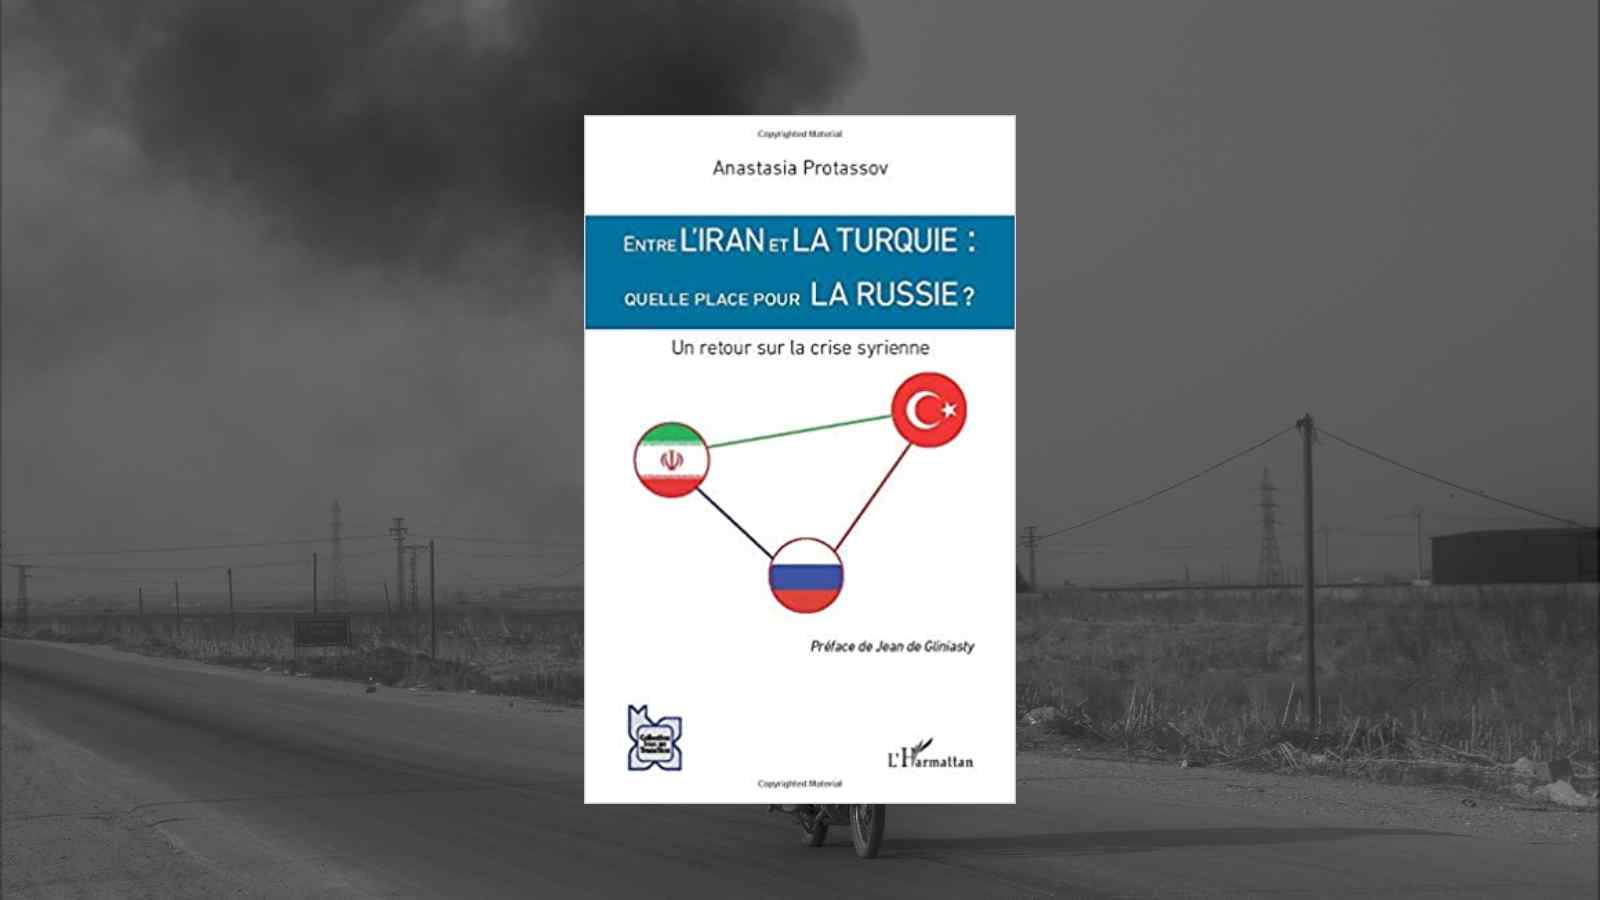 Entre l’Iran et la Turquie : quelle place pour la Russie ? Un retour sur la crise syrienne.